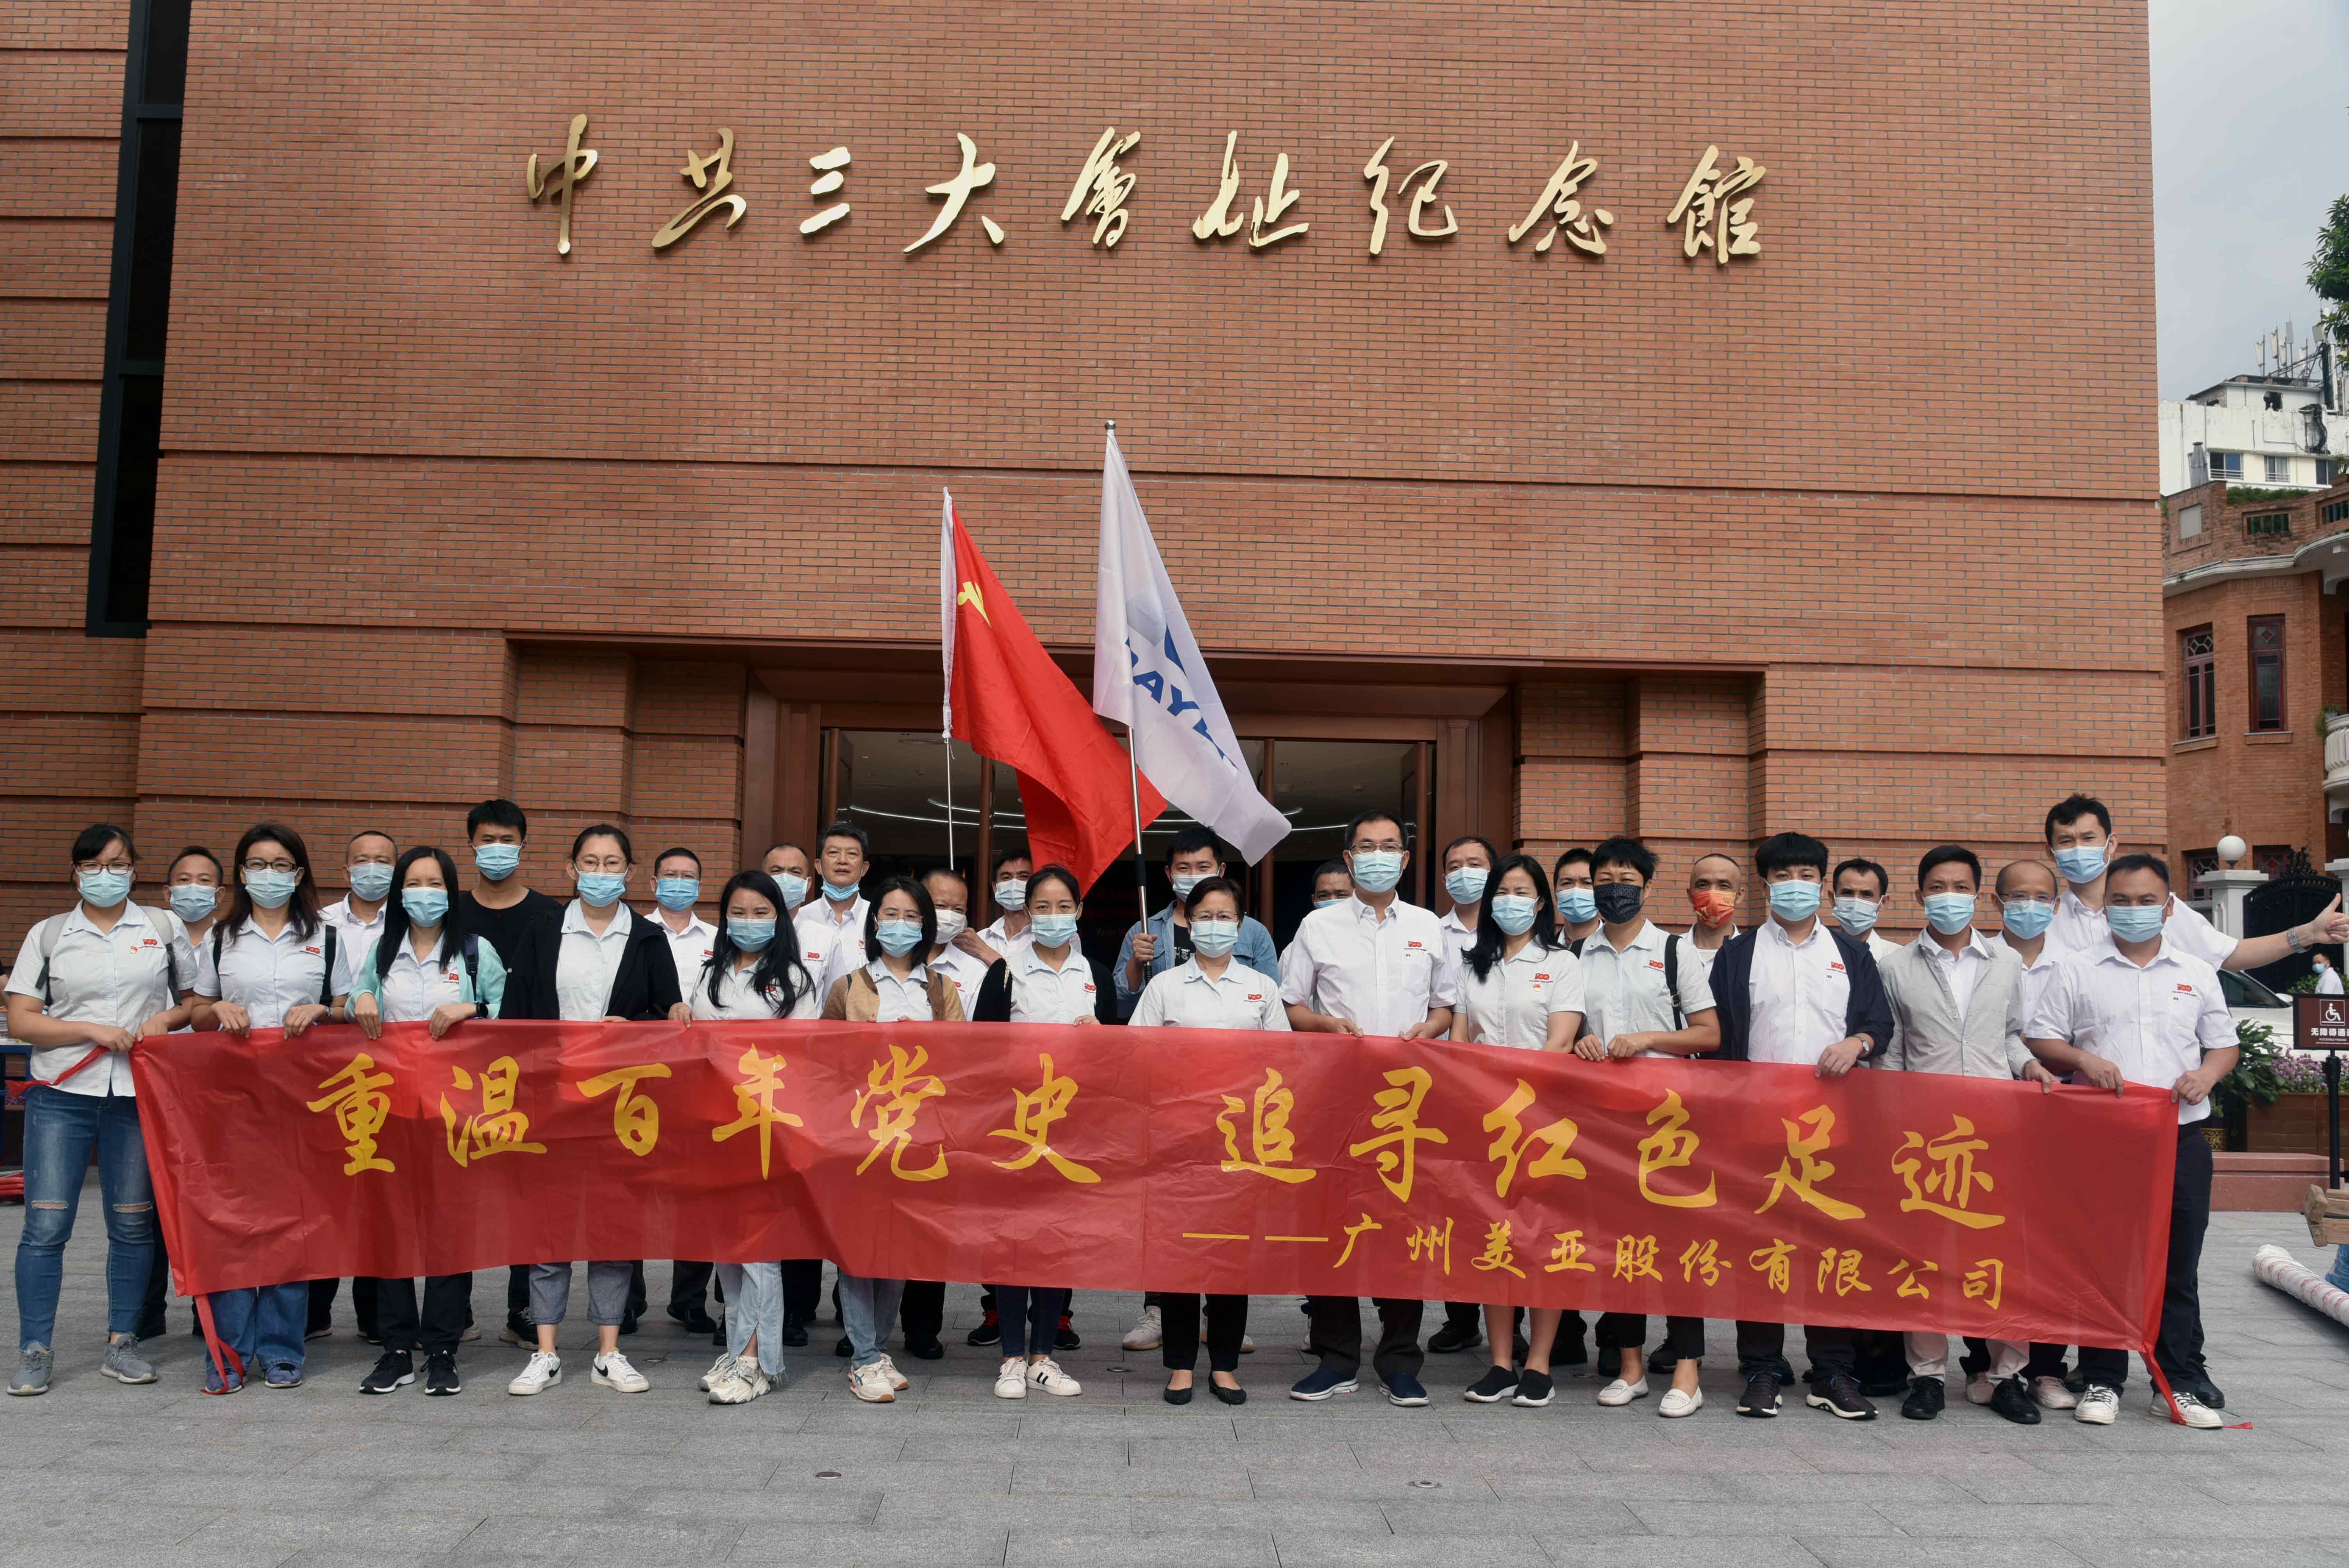 重温百年党史 | 广州美亚组织参观中共三大会址纪念馆和农讲所